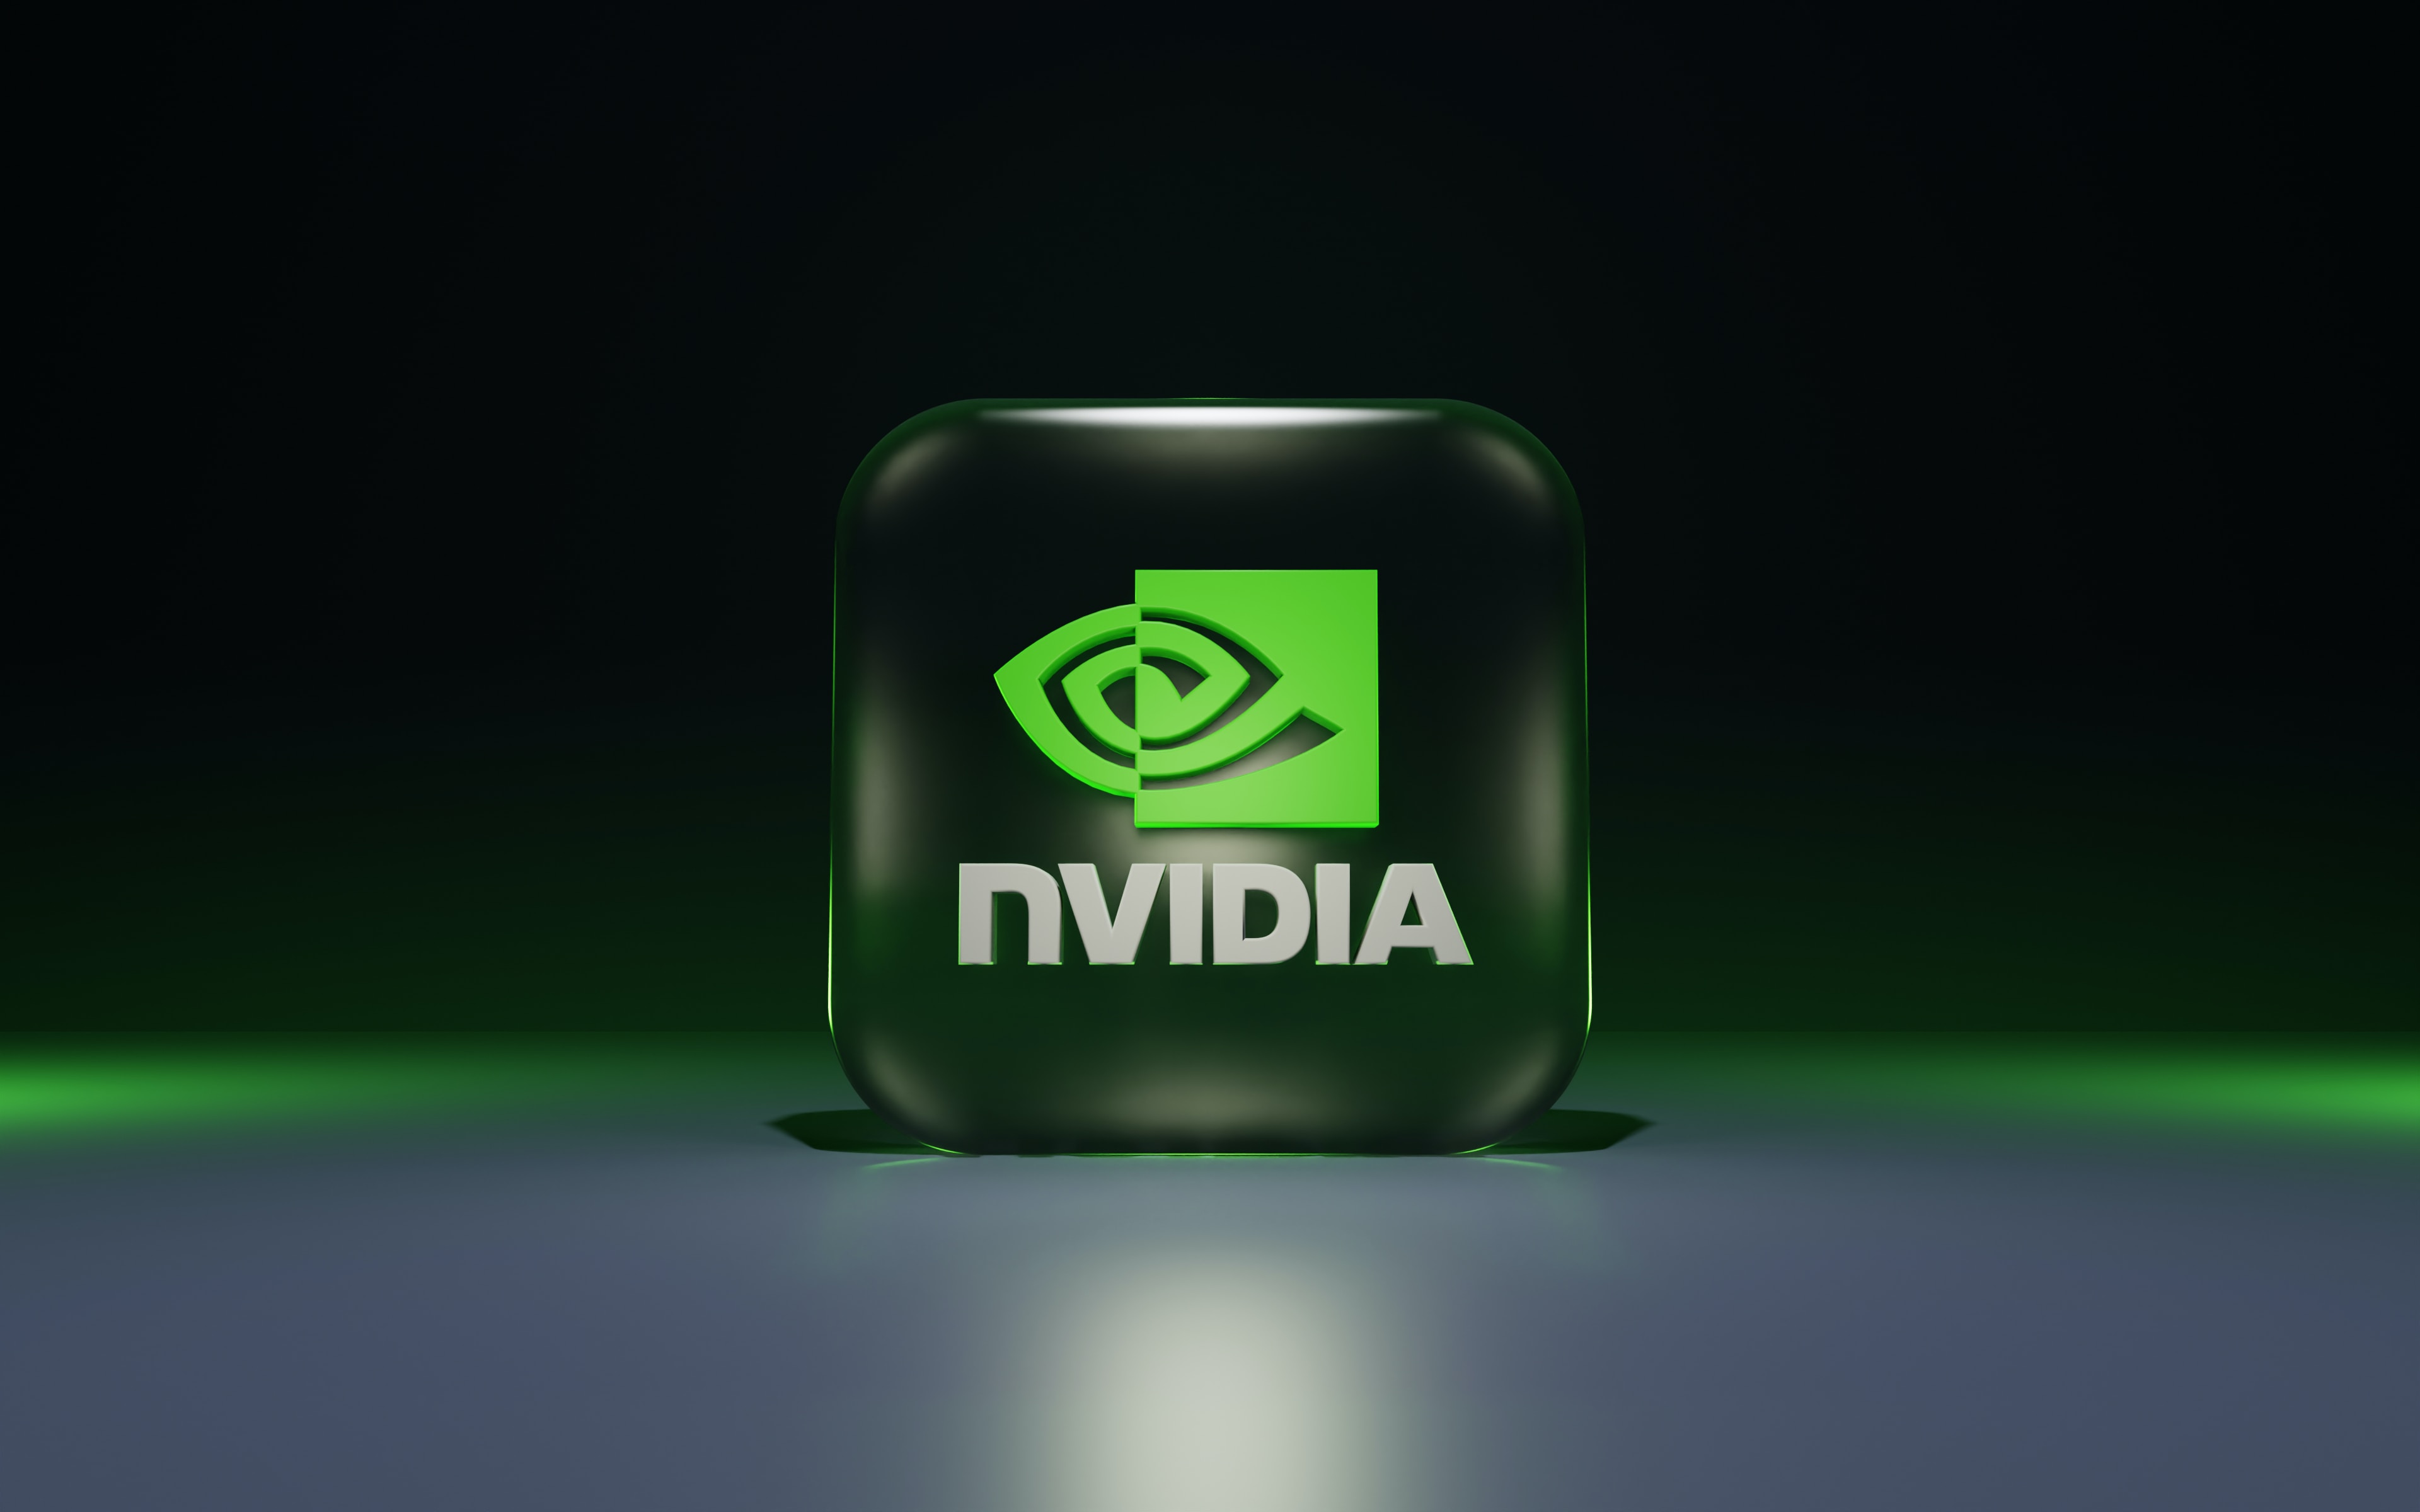 NVIDIA розробляє нові ШІ-чипи для Китаю для обходу експортних обмежень США - ЗМІ